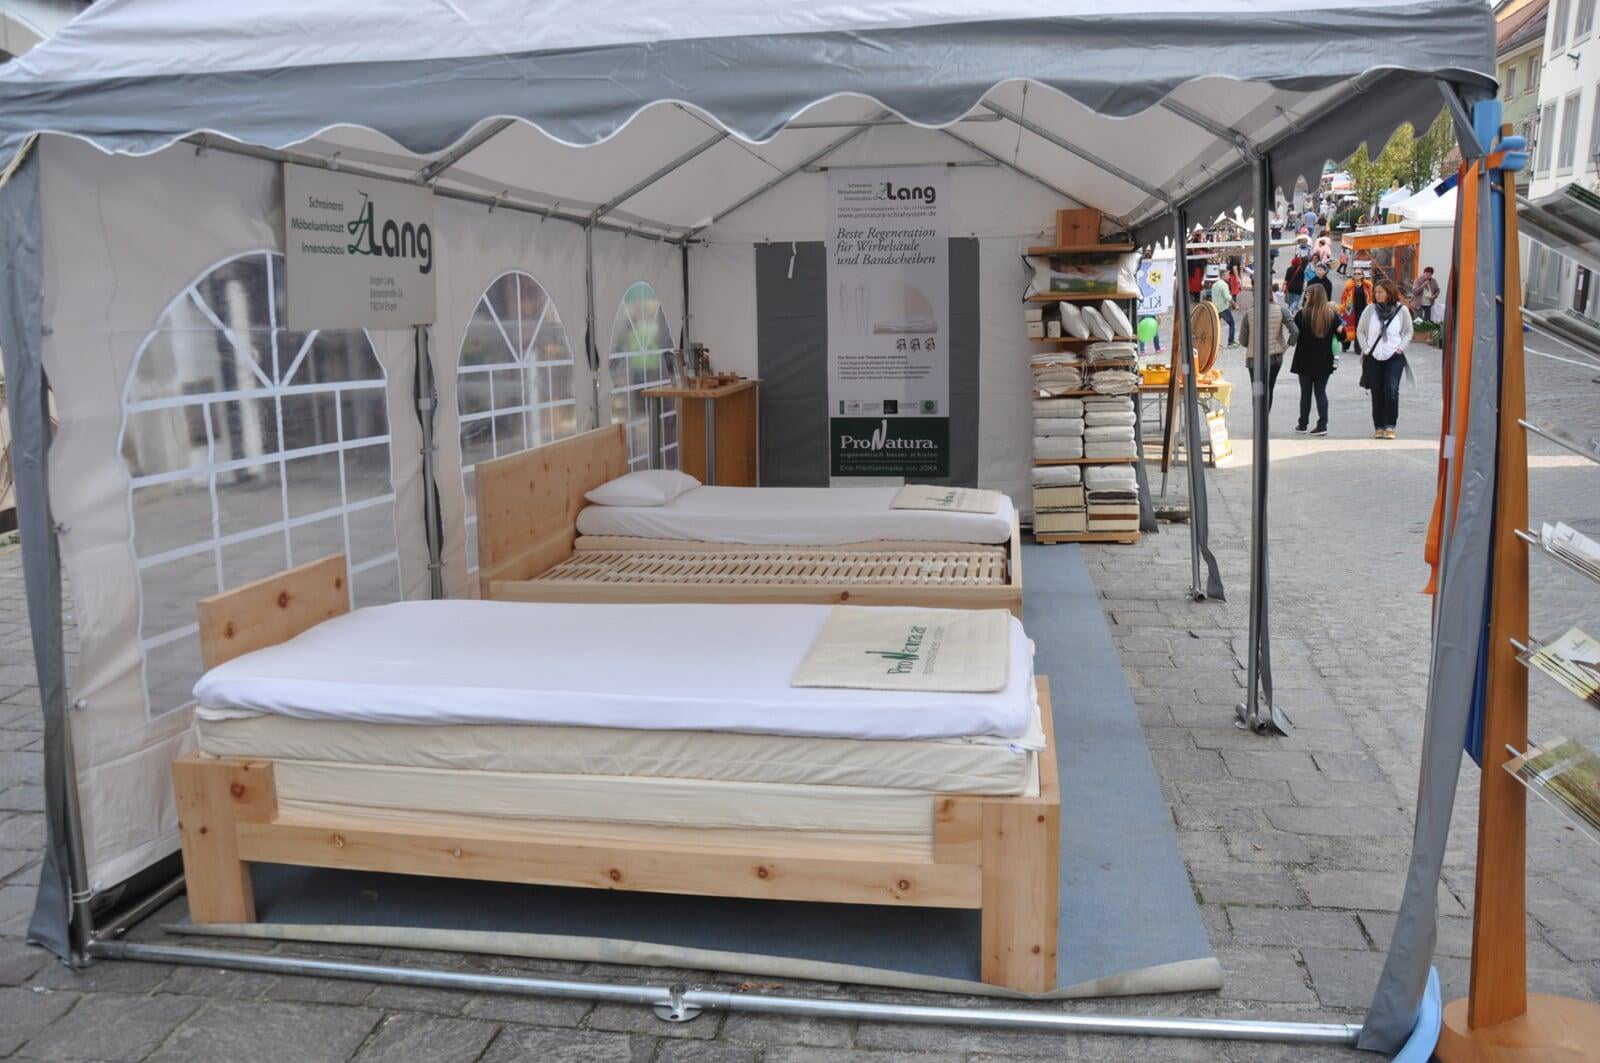 Ausstellungspräsentation von den Schlafsystemen von ProNatura im Zelt auf dem Ökomarkt in Engen